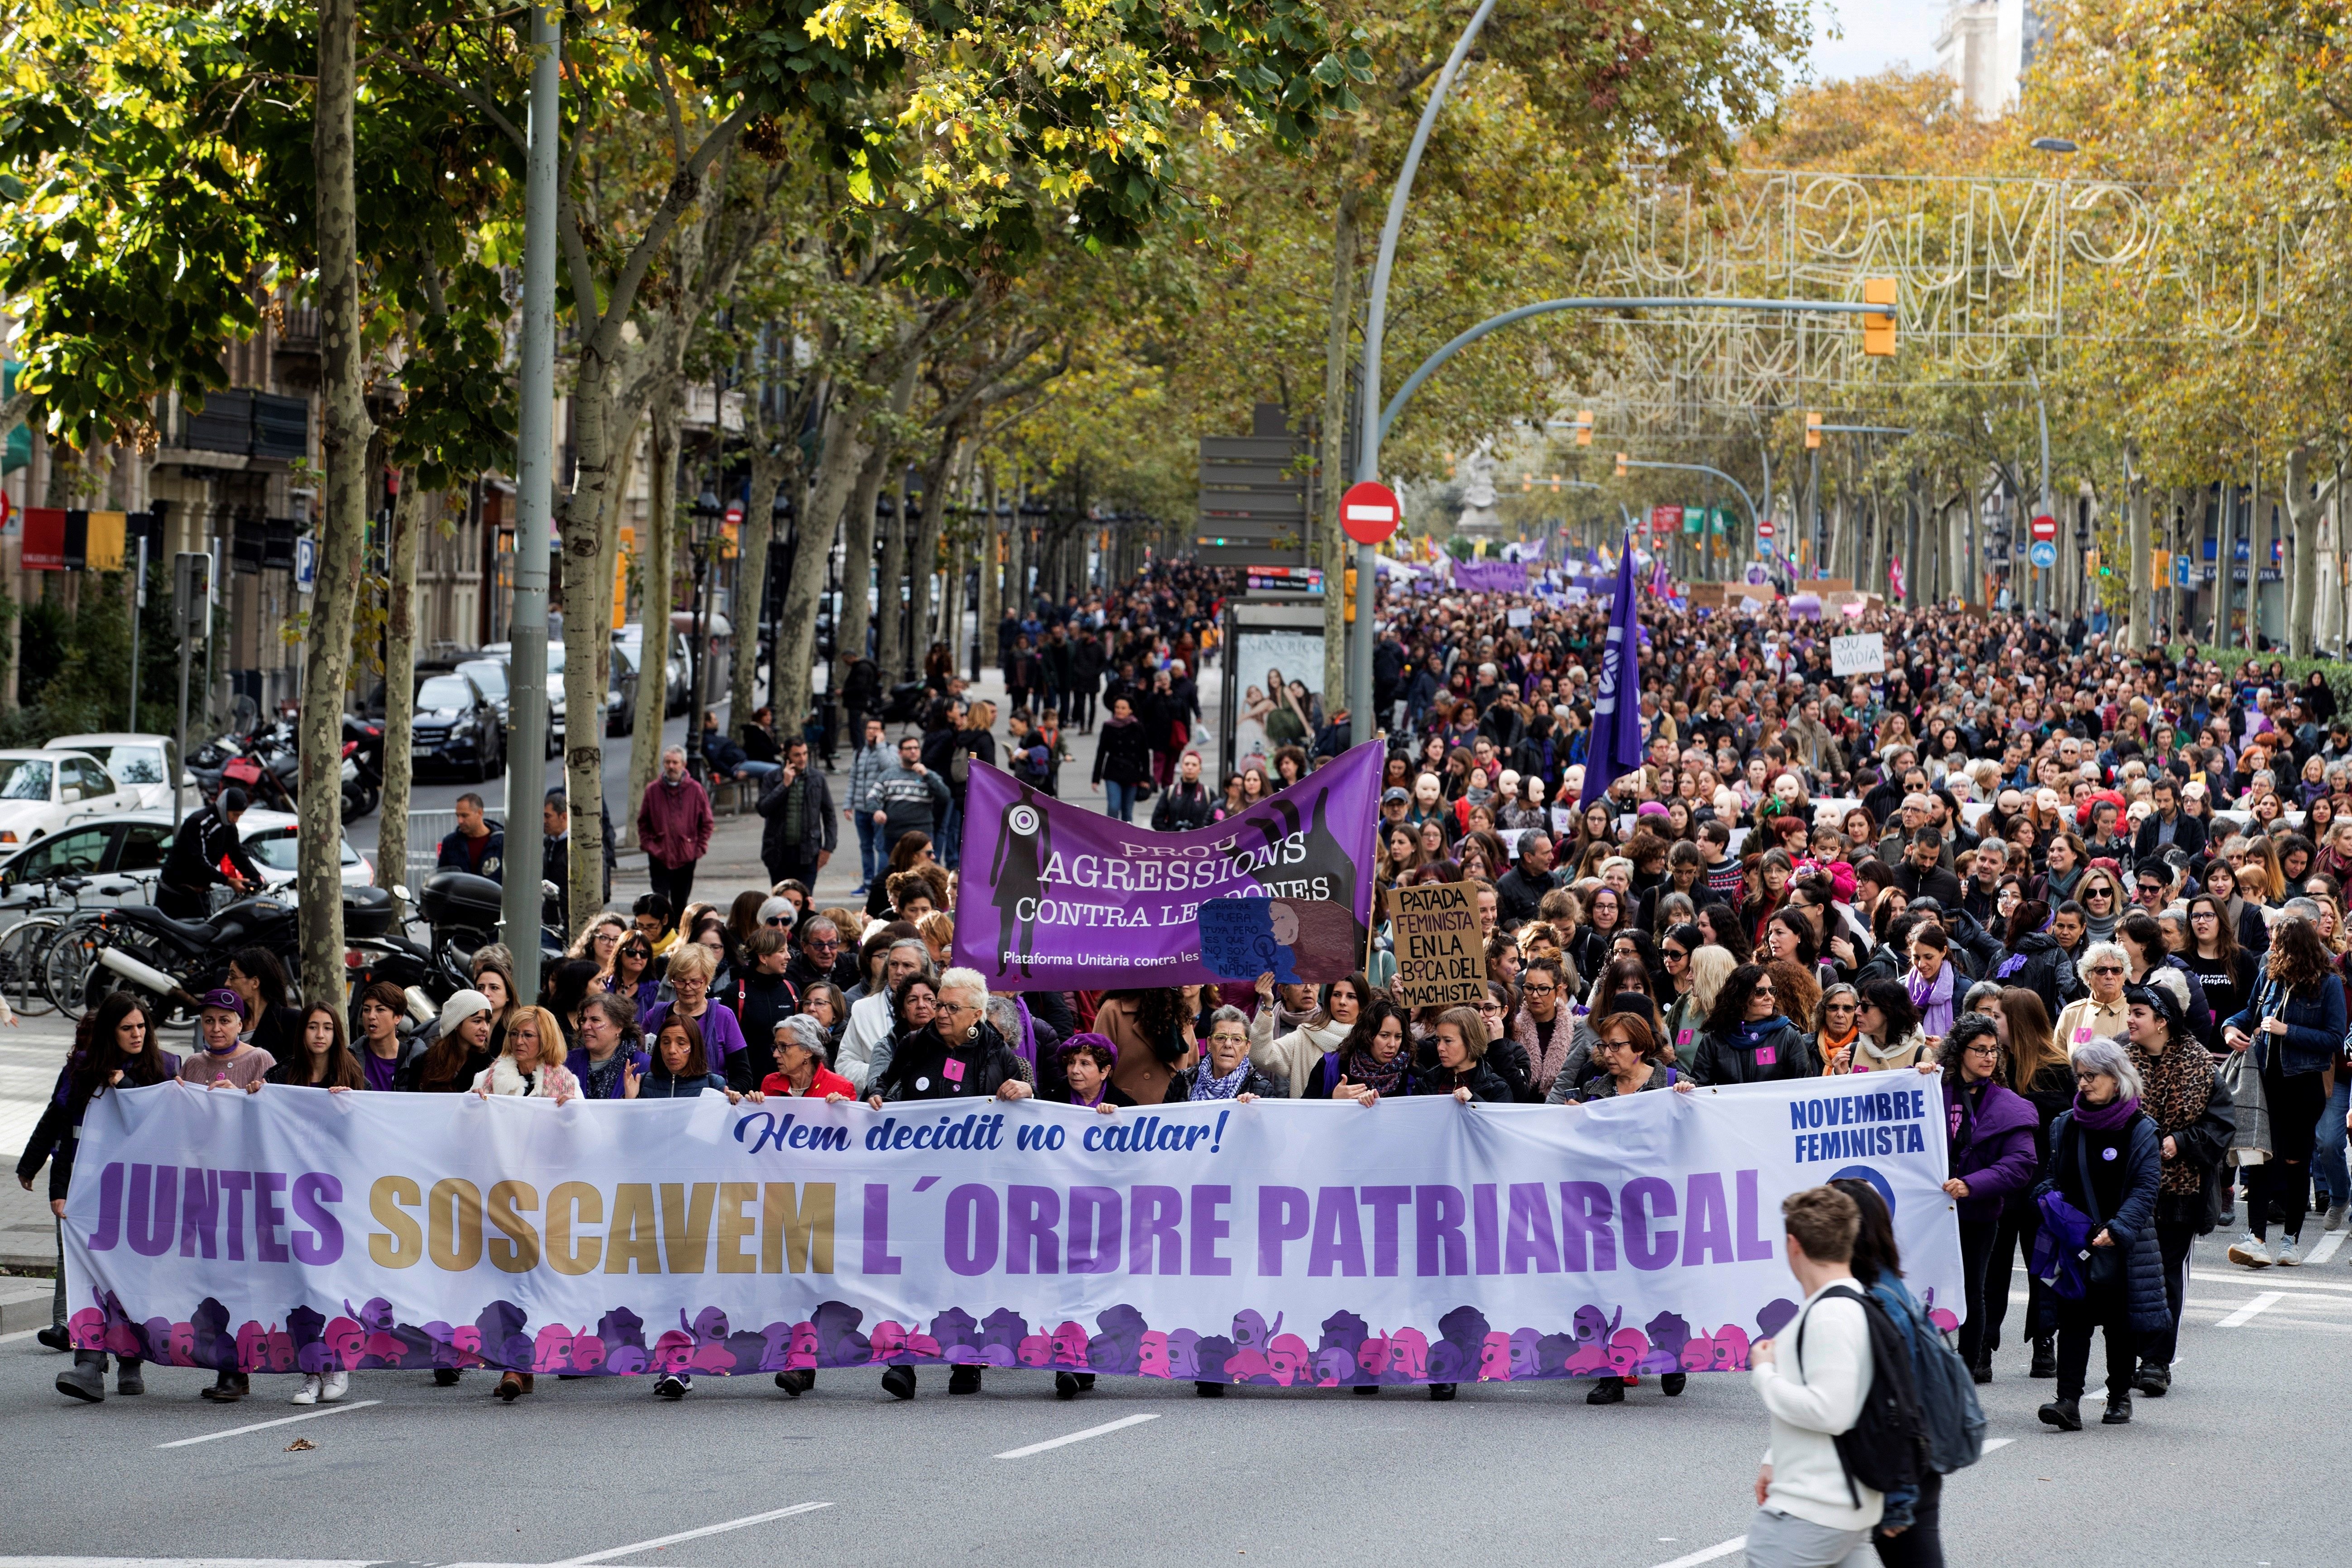 Clam per erradicar la violència contra les dones: "Soscavem l'ordre patriarcal"